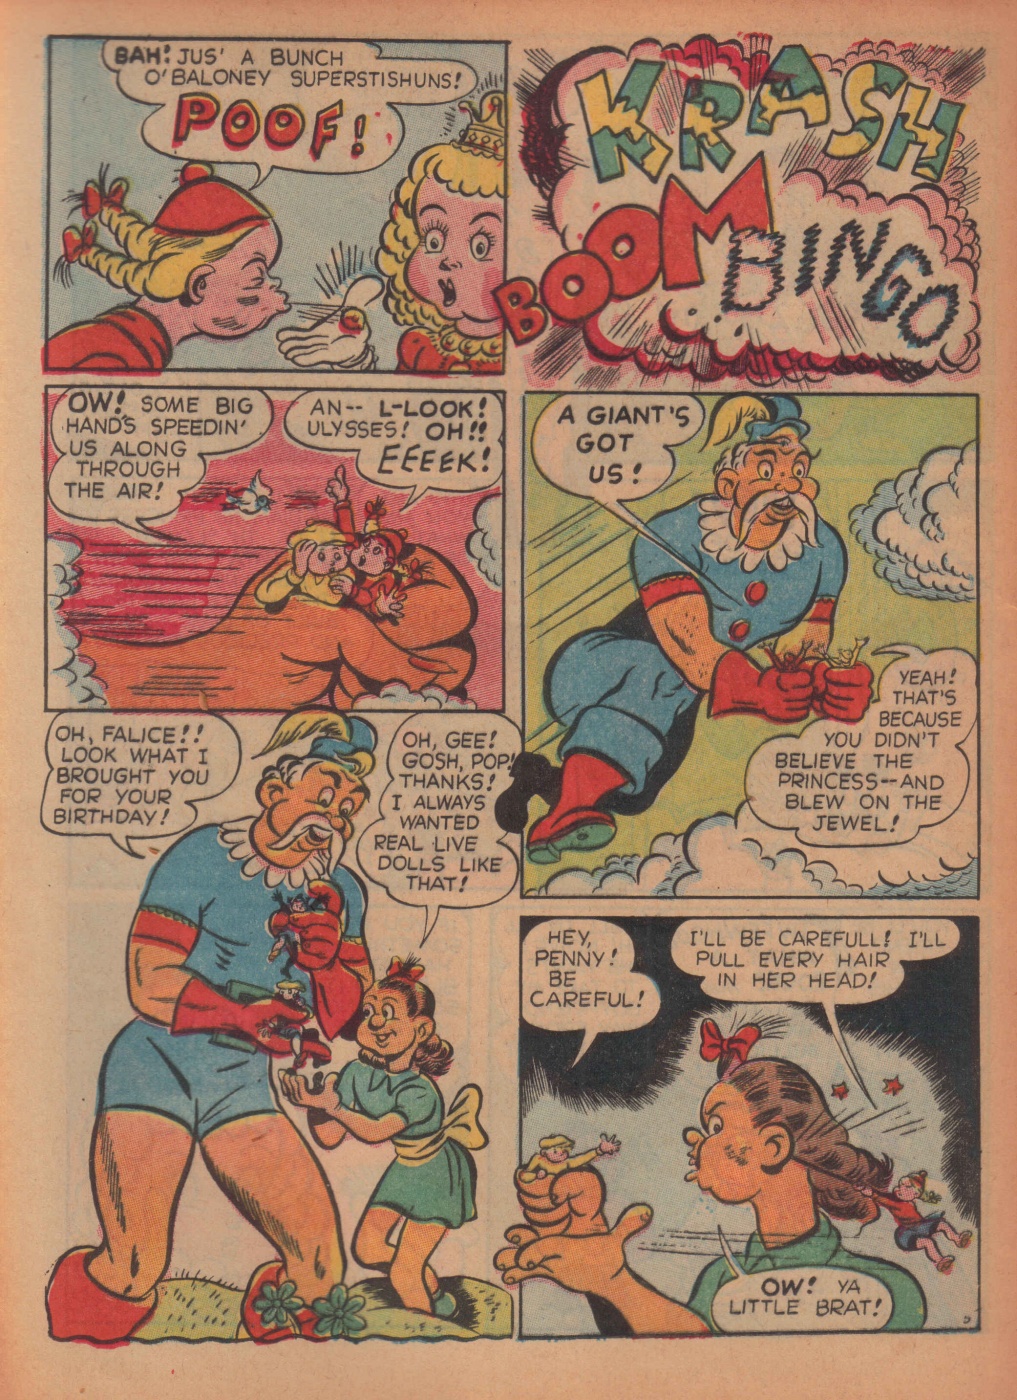 Super Dooper Funny Comics (28)